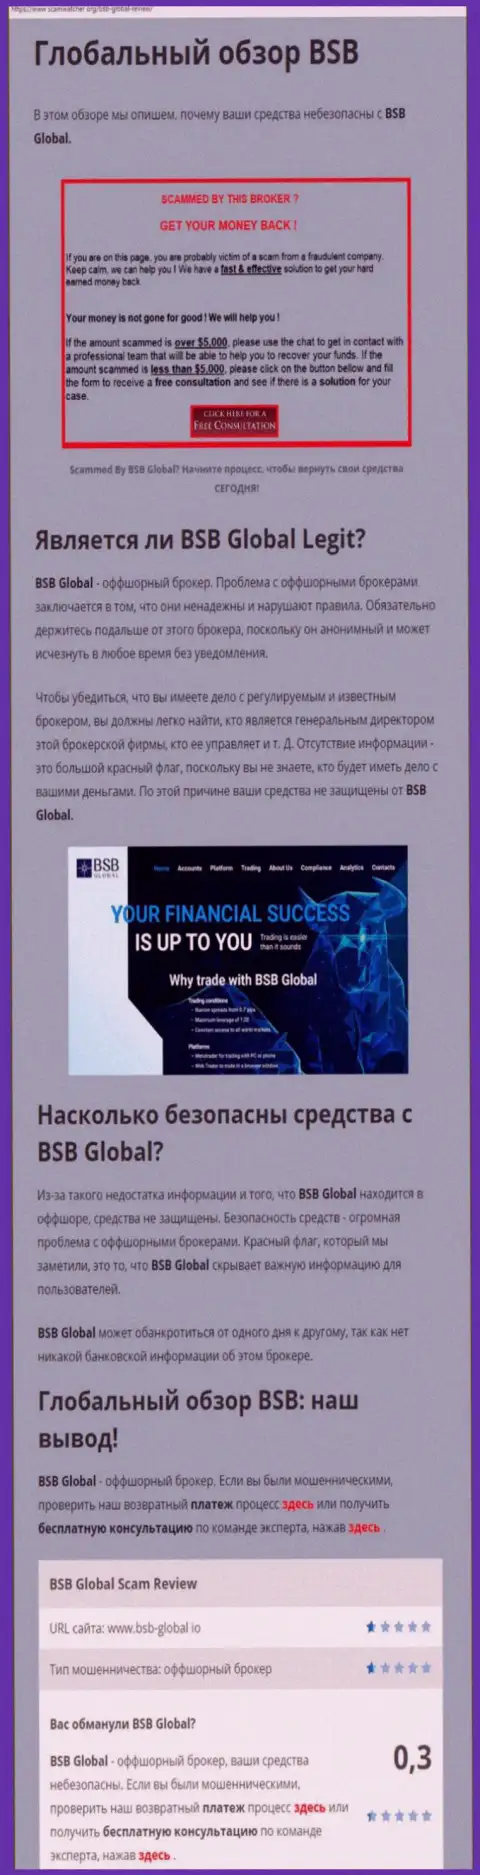 BSB Global - ВОРЫ !!! Взаимодействие с которыми обернется утратой вложенных денежных средств (обзор неправомерных деяний)